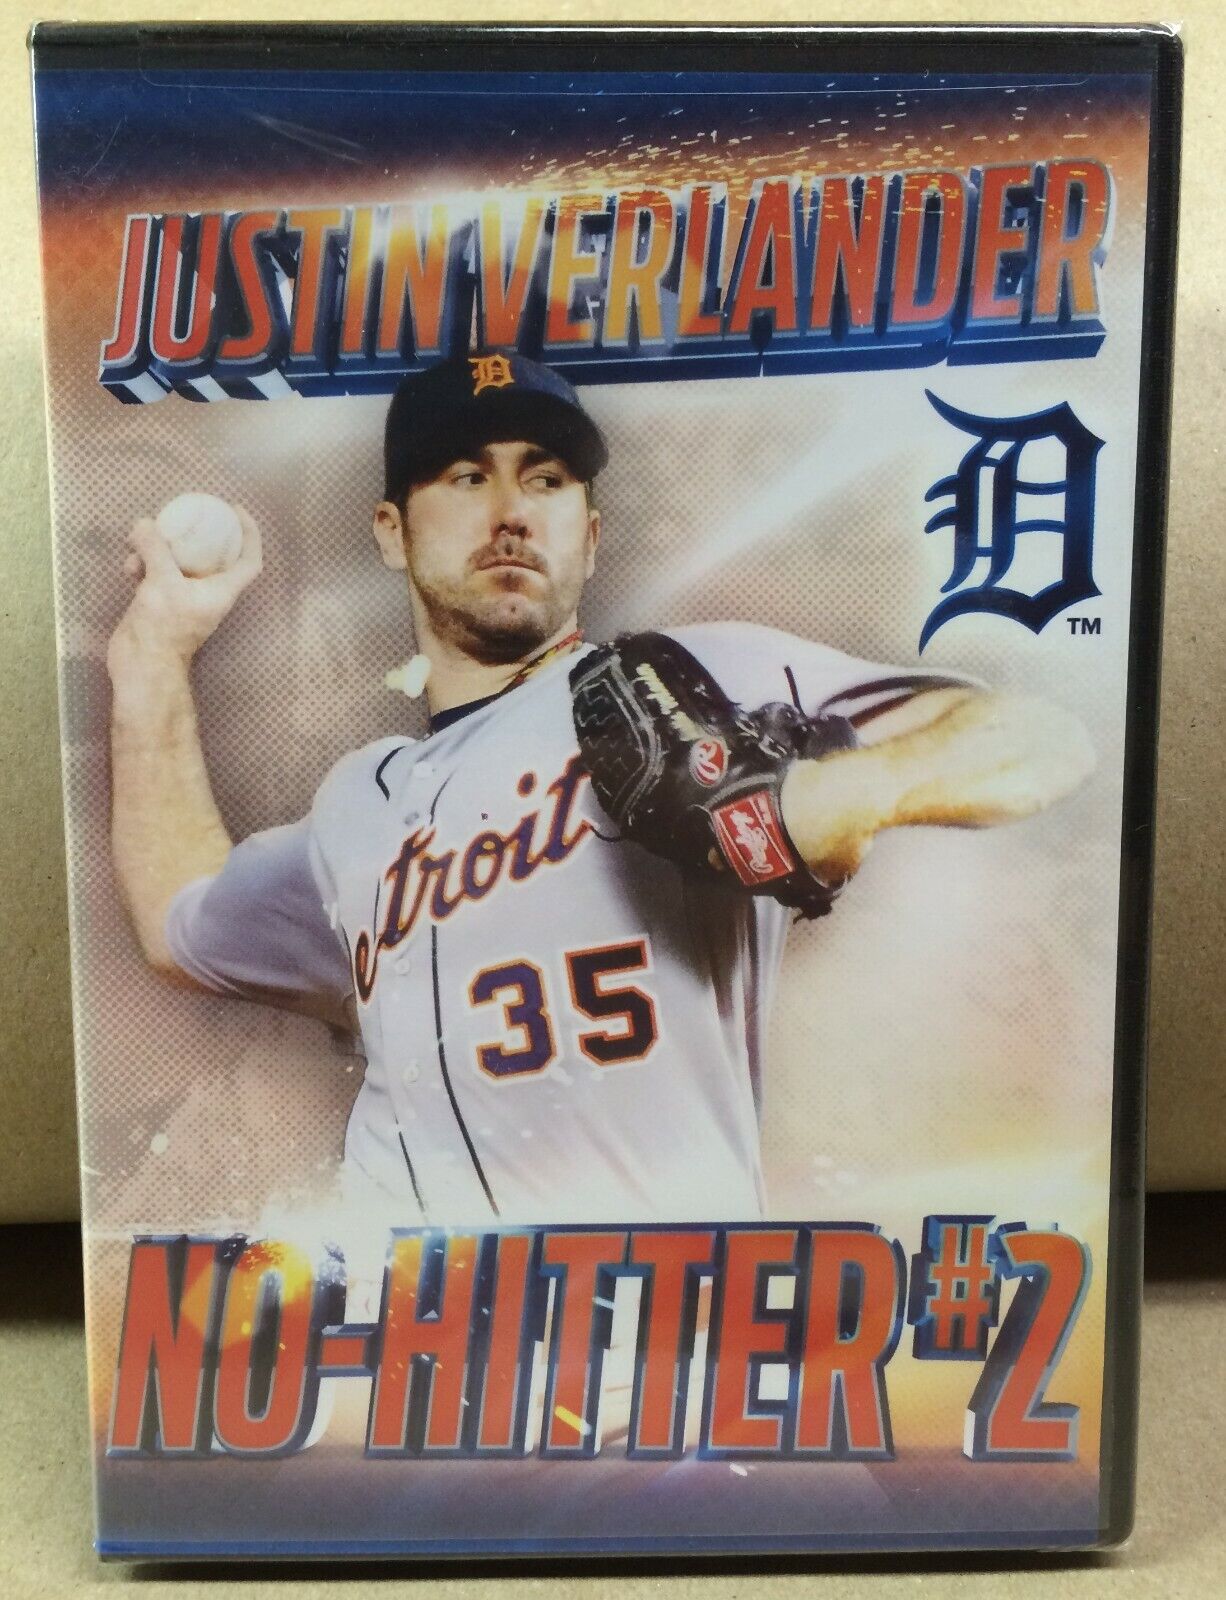 Justin Verlander No Hitter #2 DVD NEW SEALED Detroit Tigers Astros SGA BIN NIB